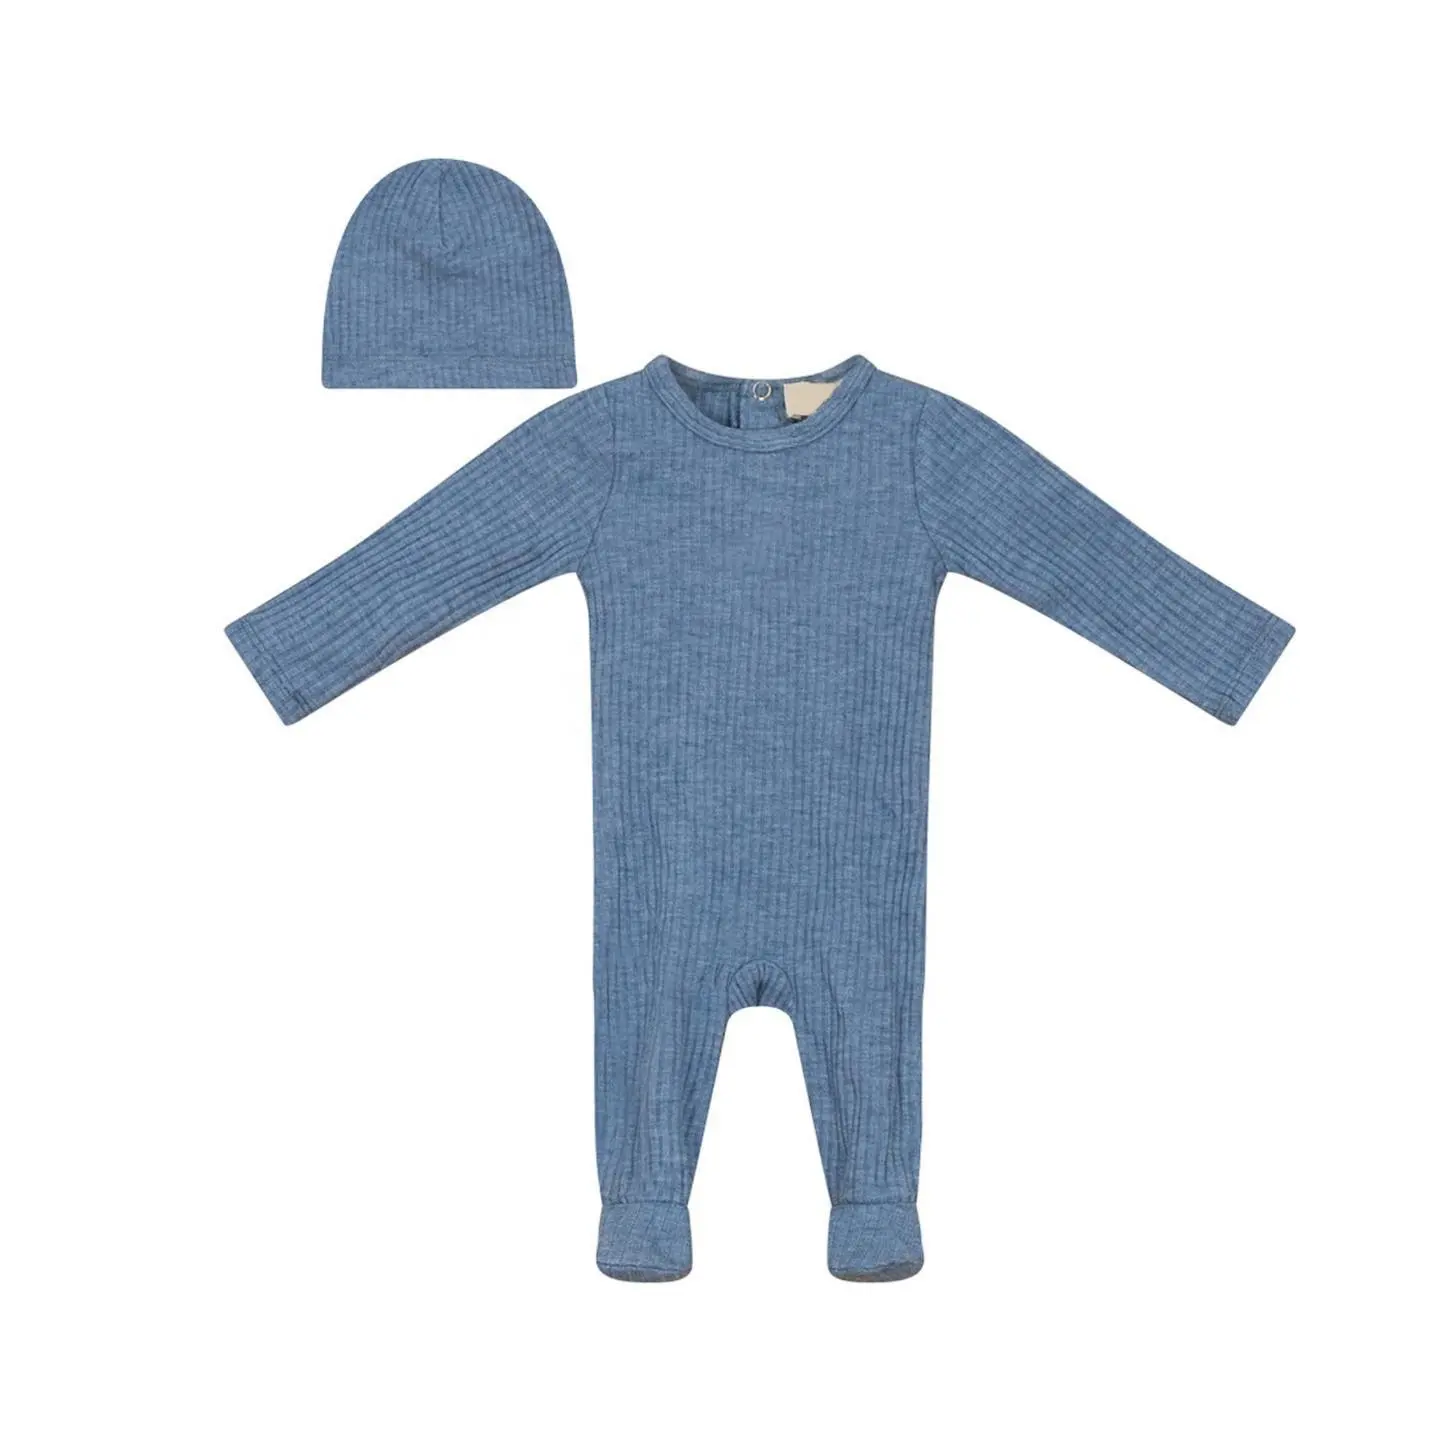 Queda Atacado Personalizado Criança Vestuário Playsuit Baby Wear Soft Knit Rompers